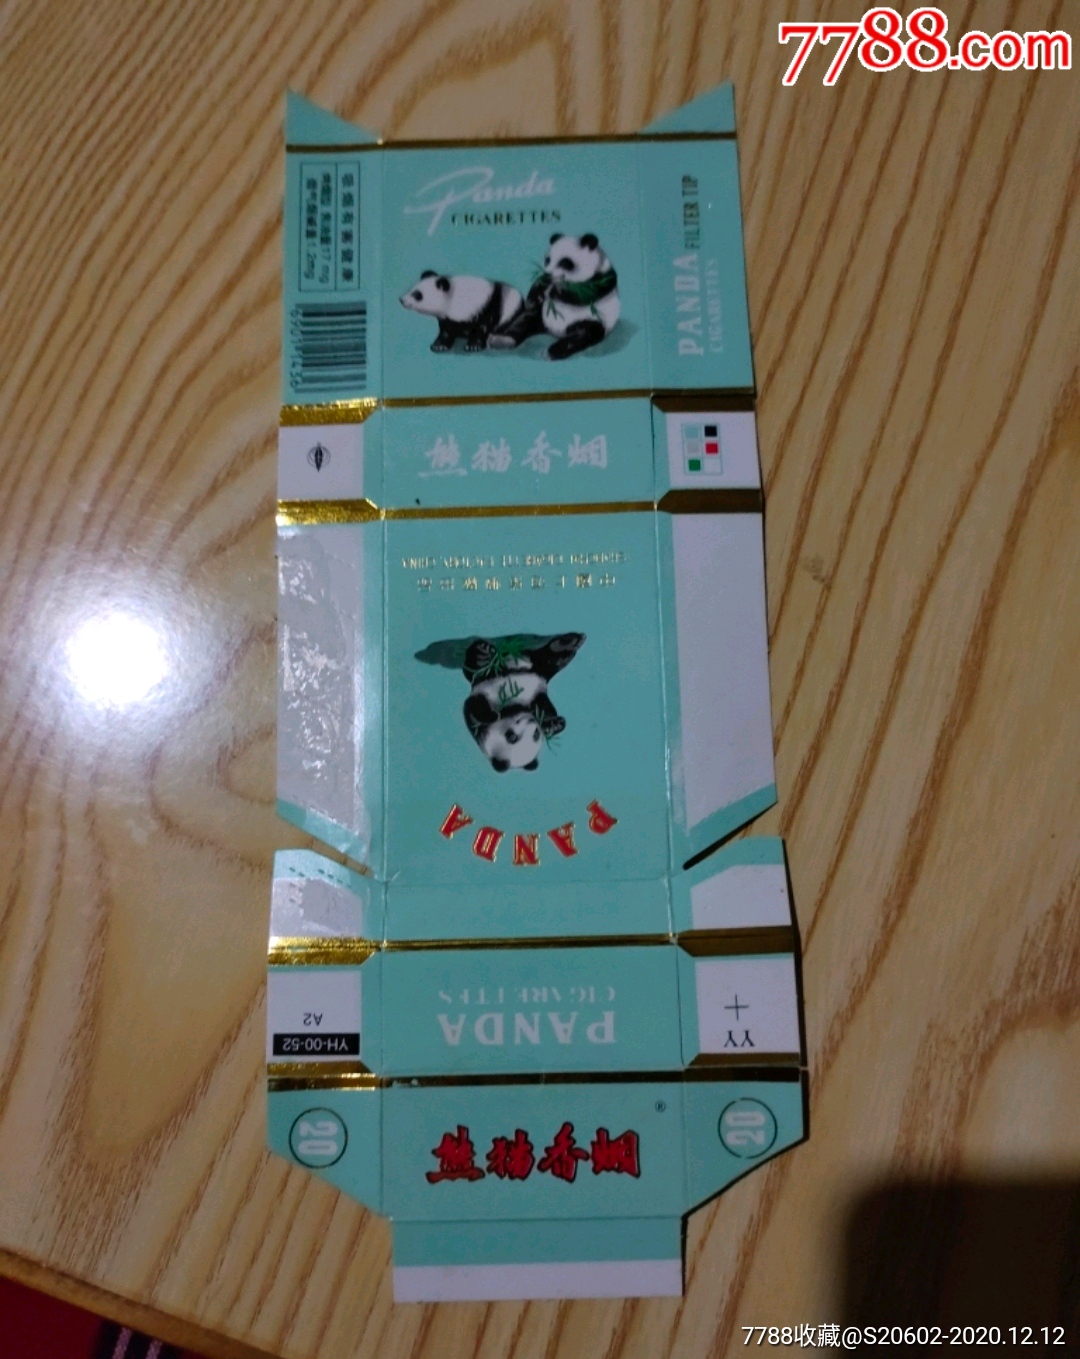 黄熊猫5包装图片